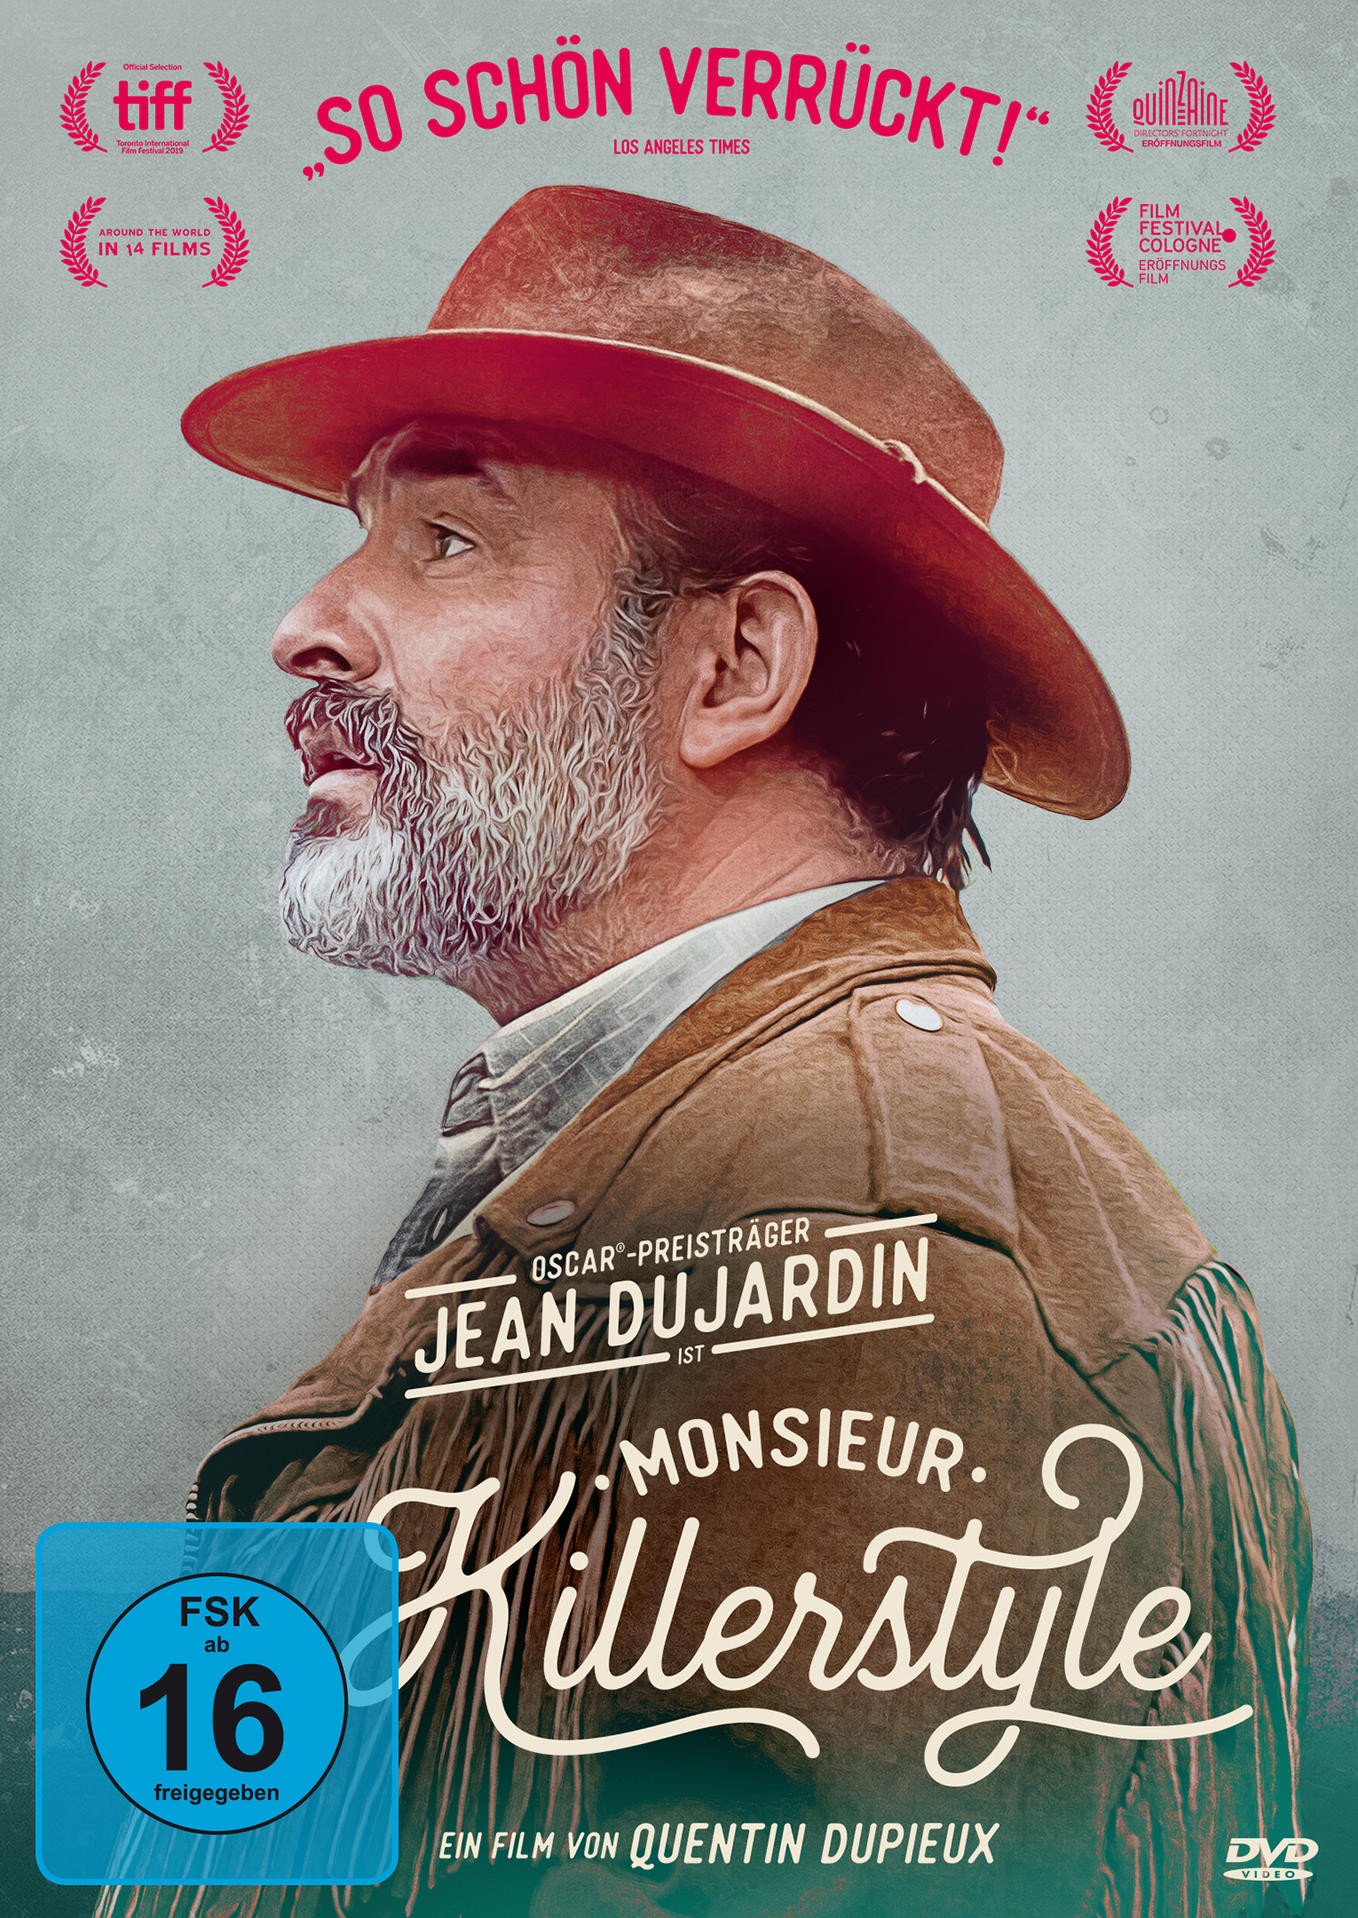 Killerstyle Monsieur DVD